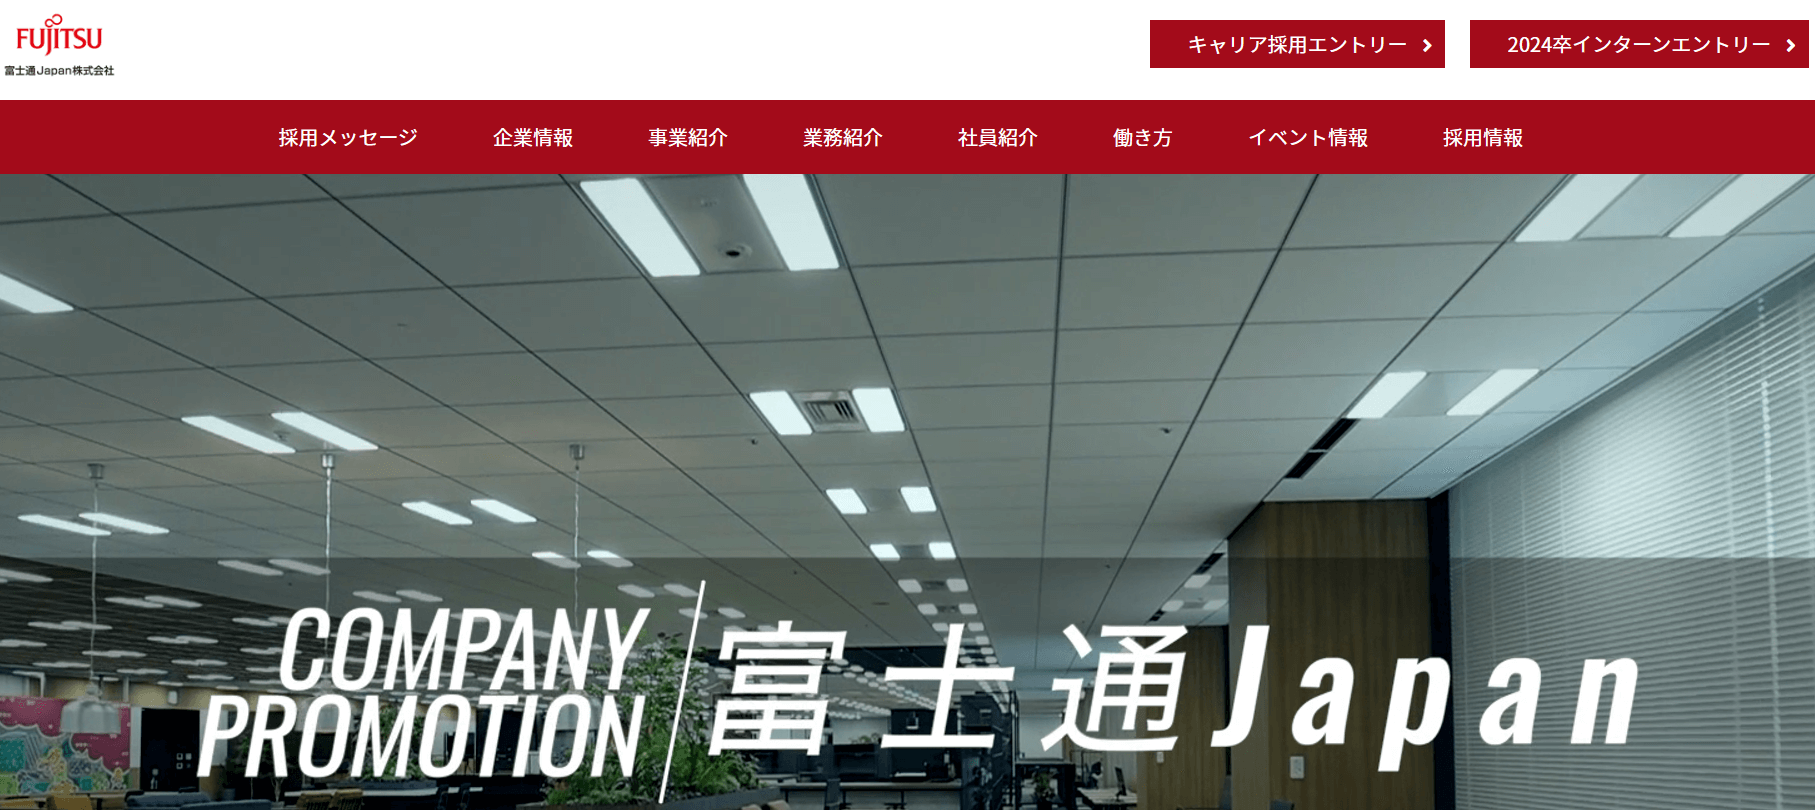 富士通Japan株式会社